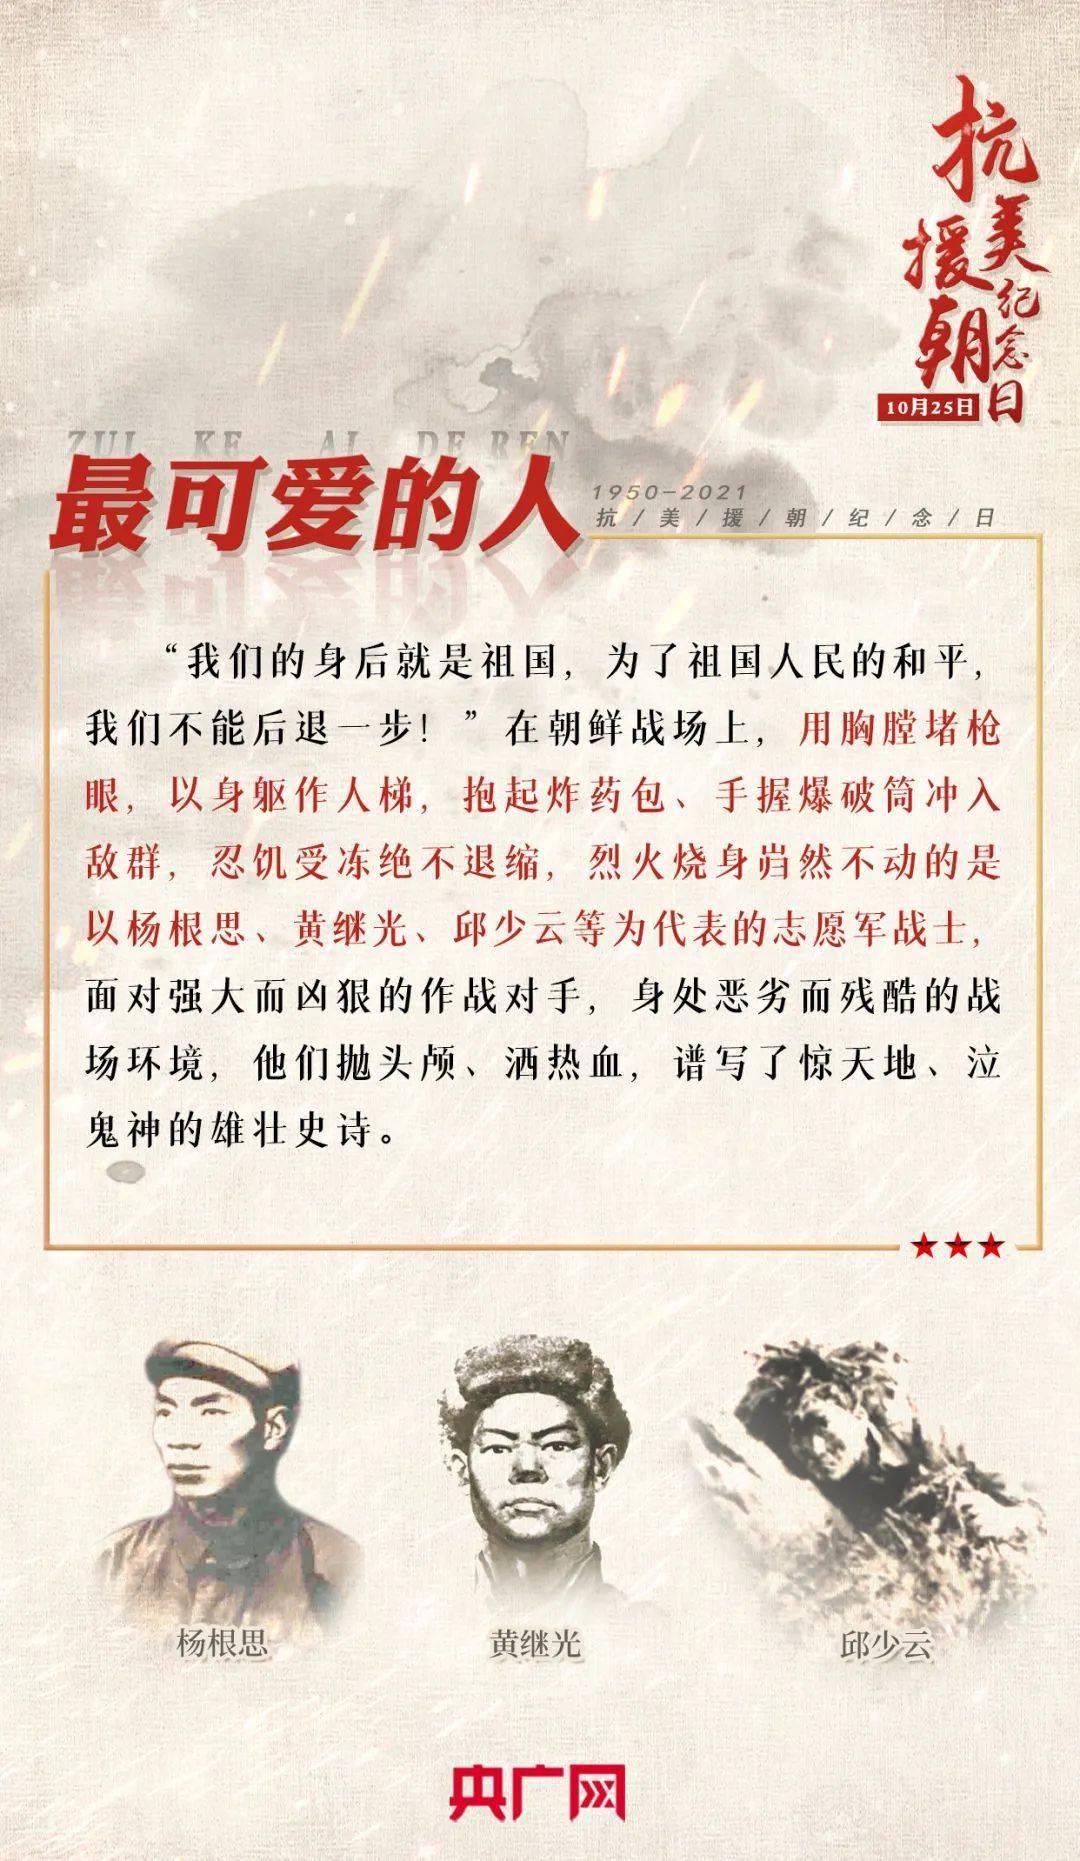 丰下洞地区10月25日中国人民志愿军跨过鸭绿江赴朝鲜前线1950年10月19